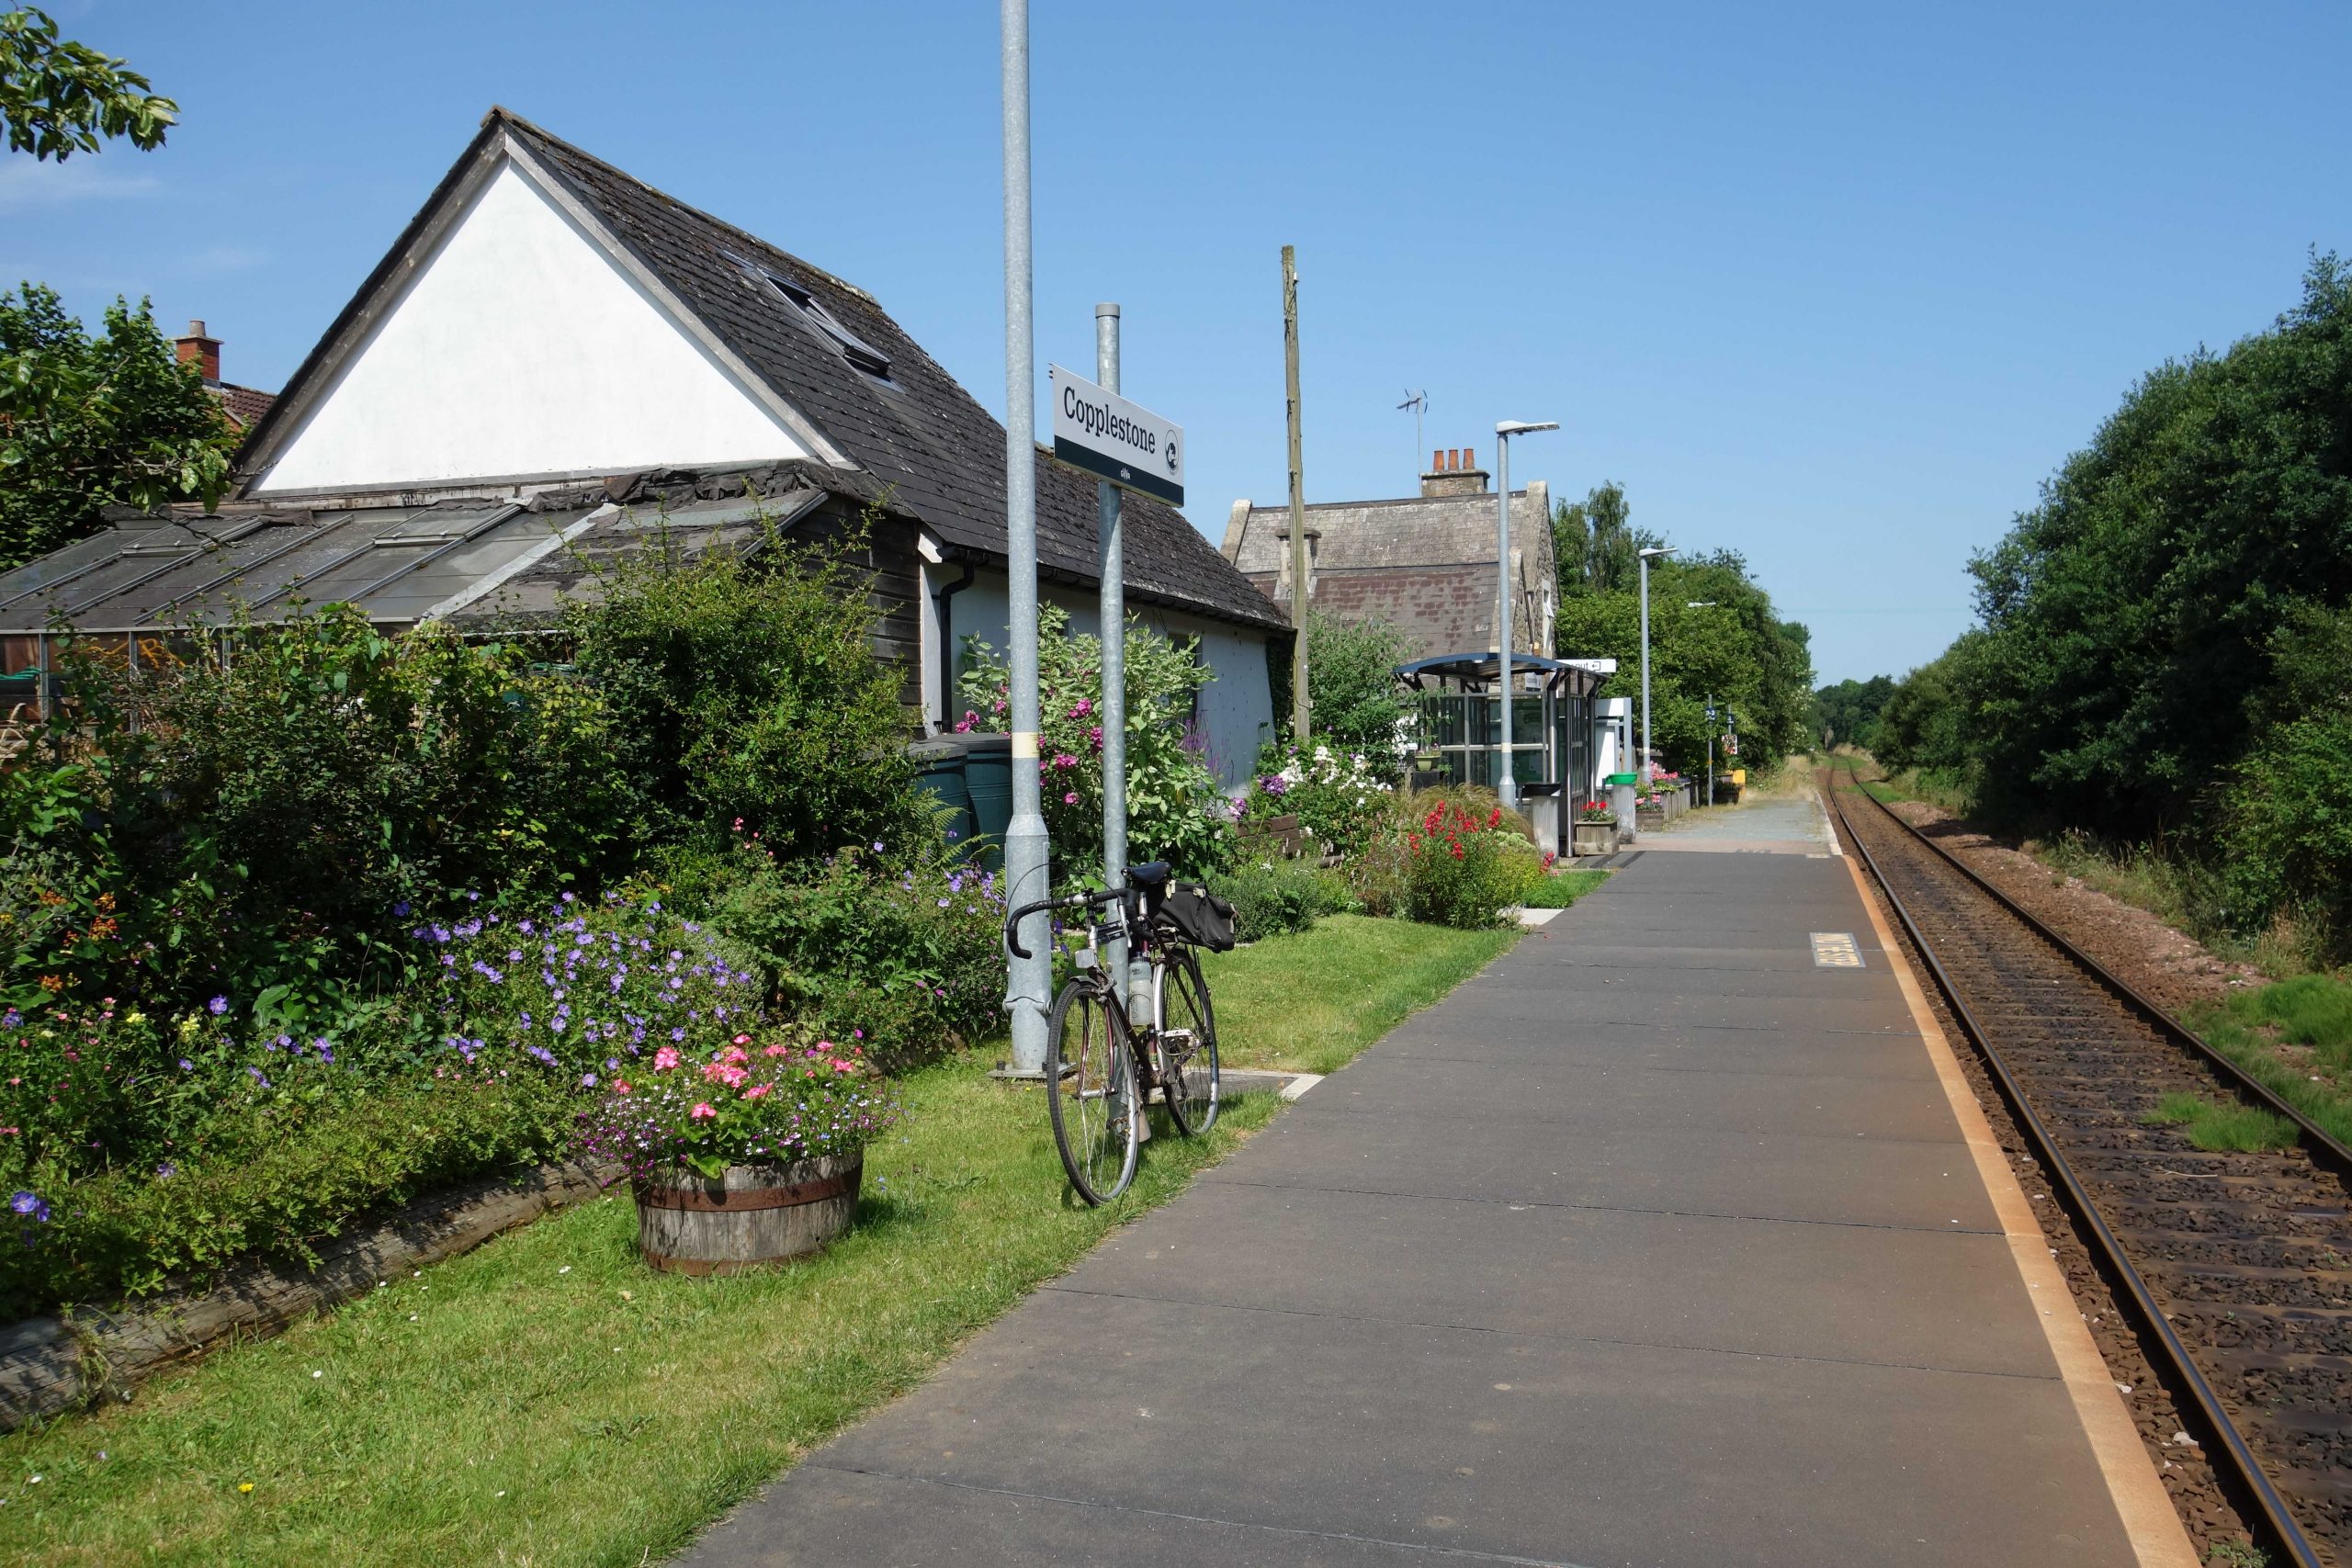 Copplestone Station